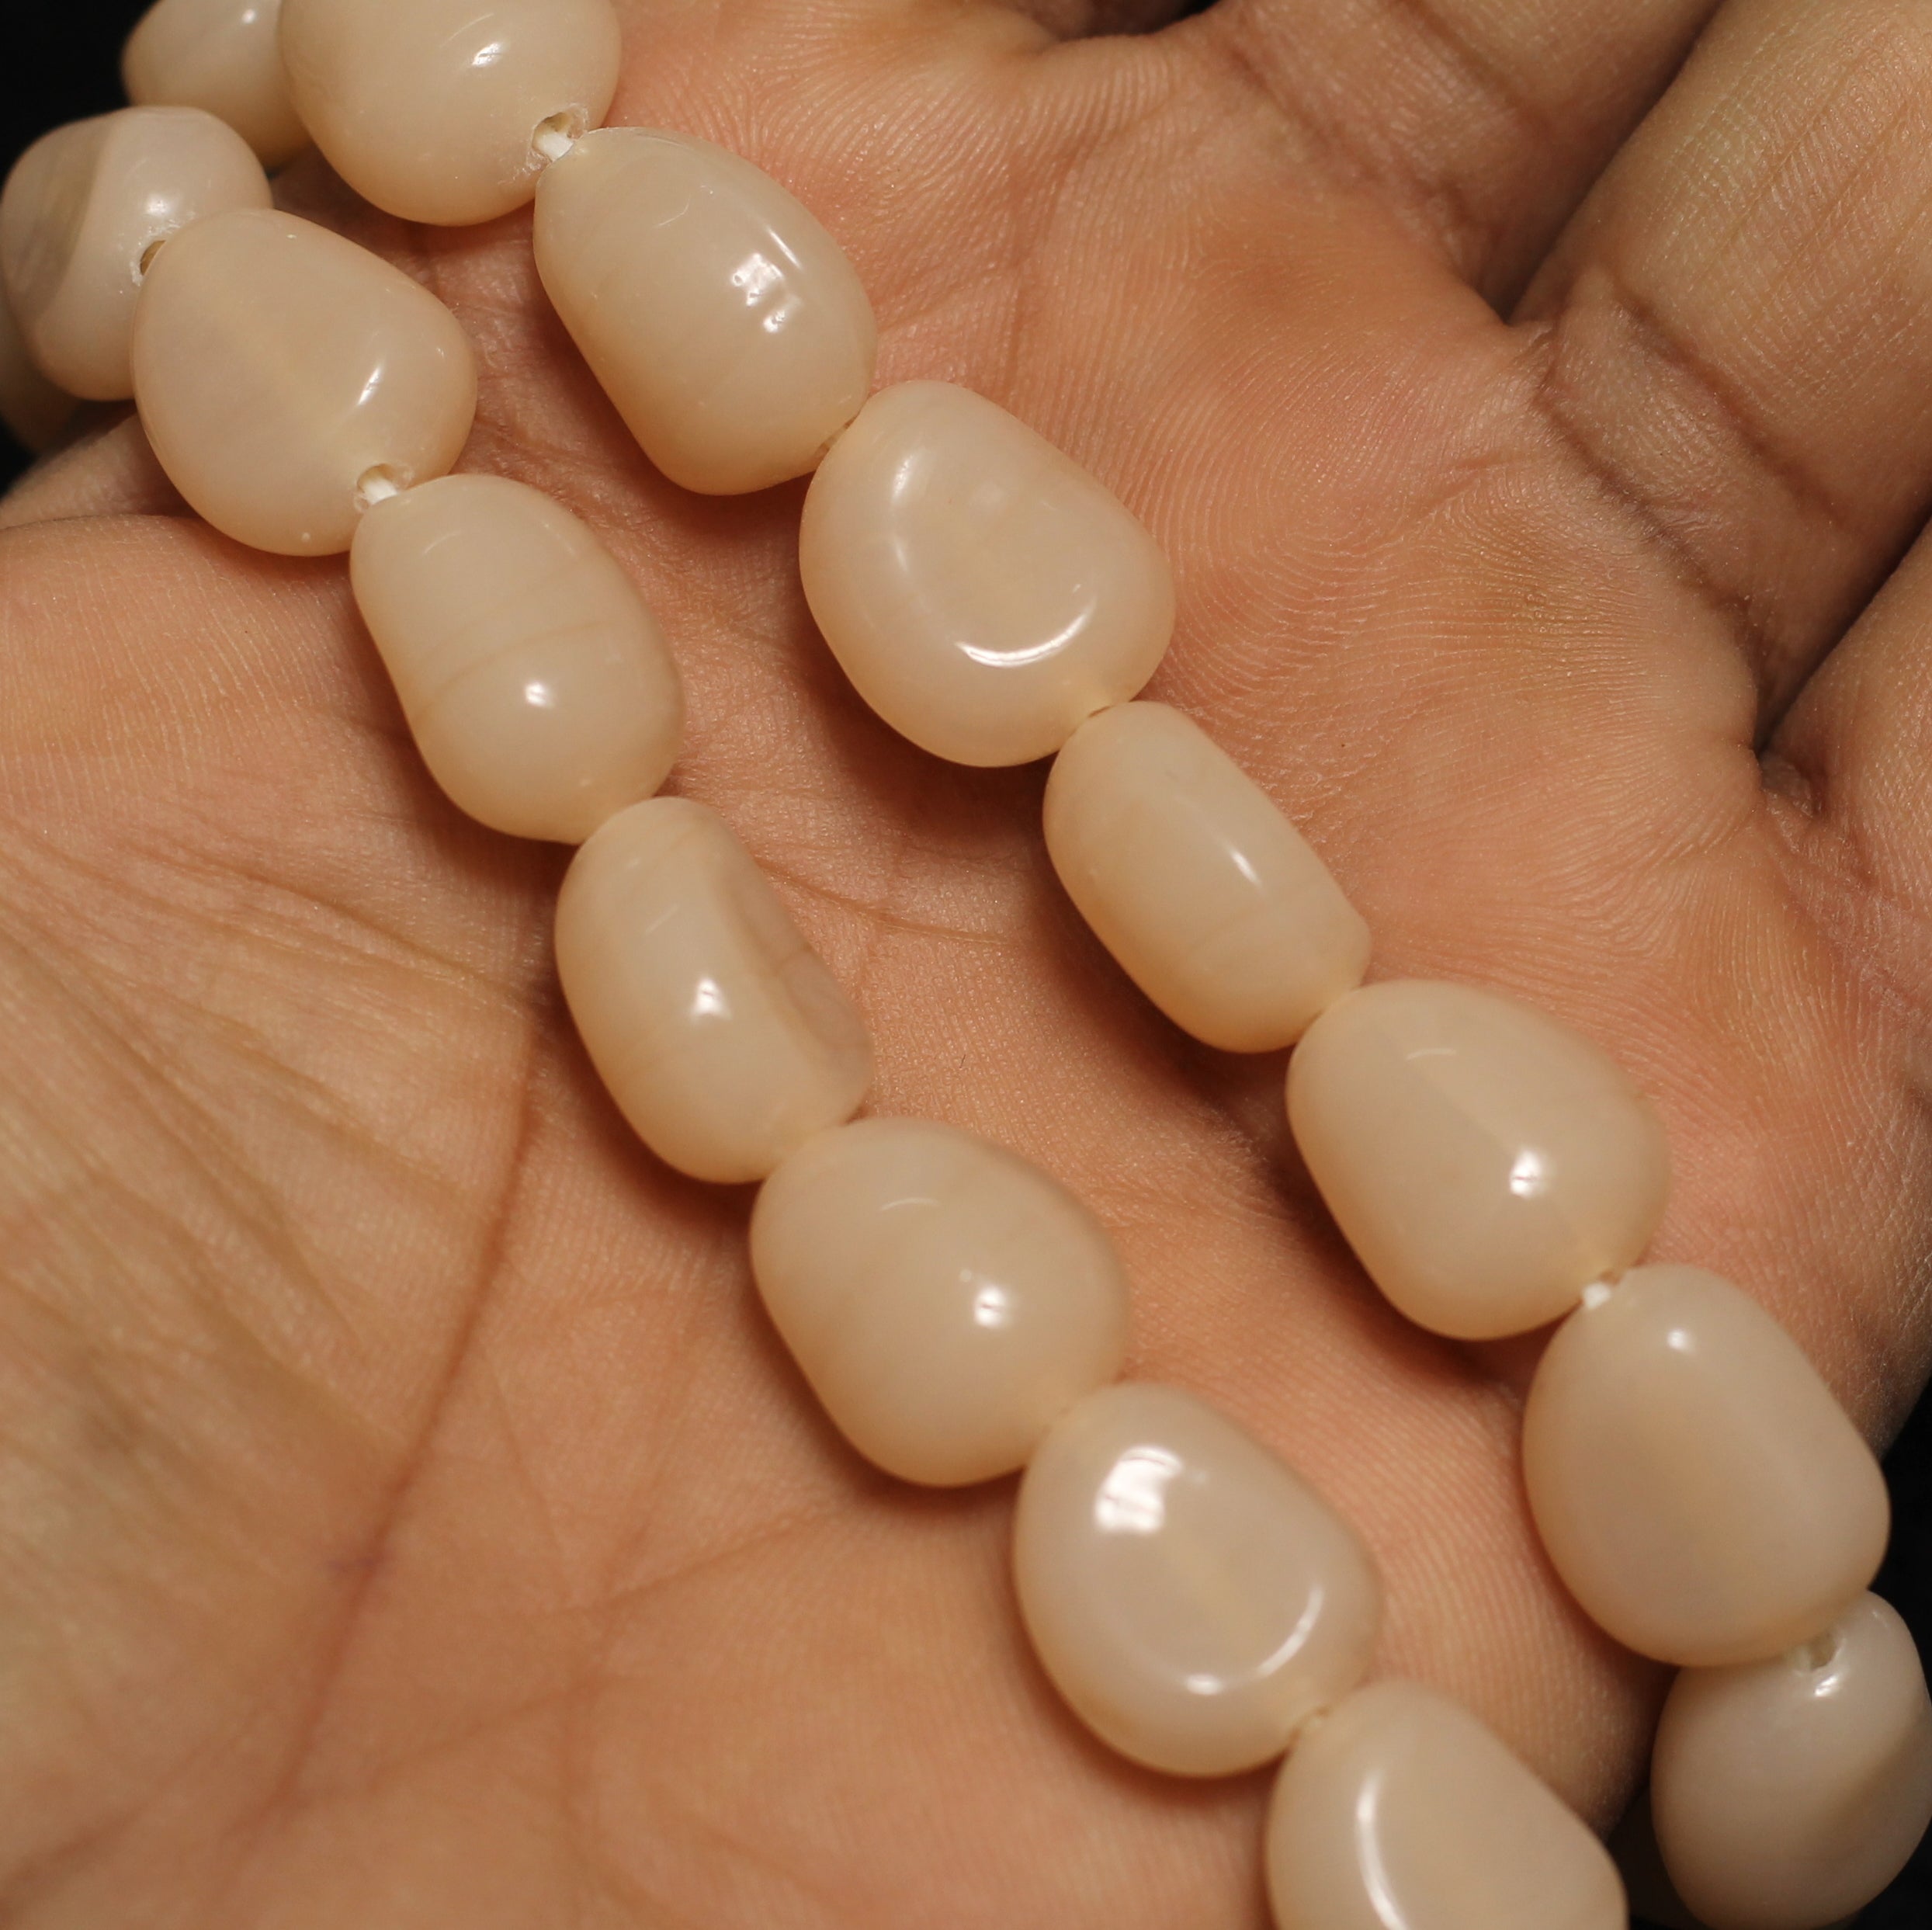 1 String 16X12mm Glass Tumble Beads Peach